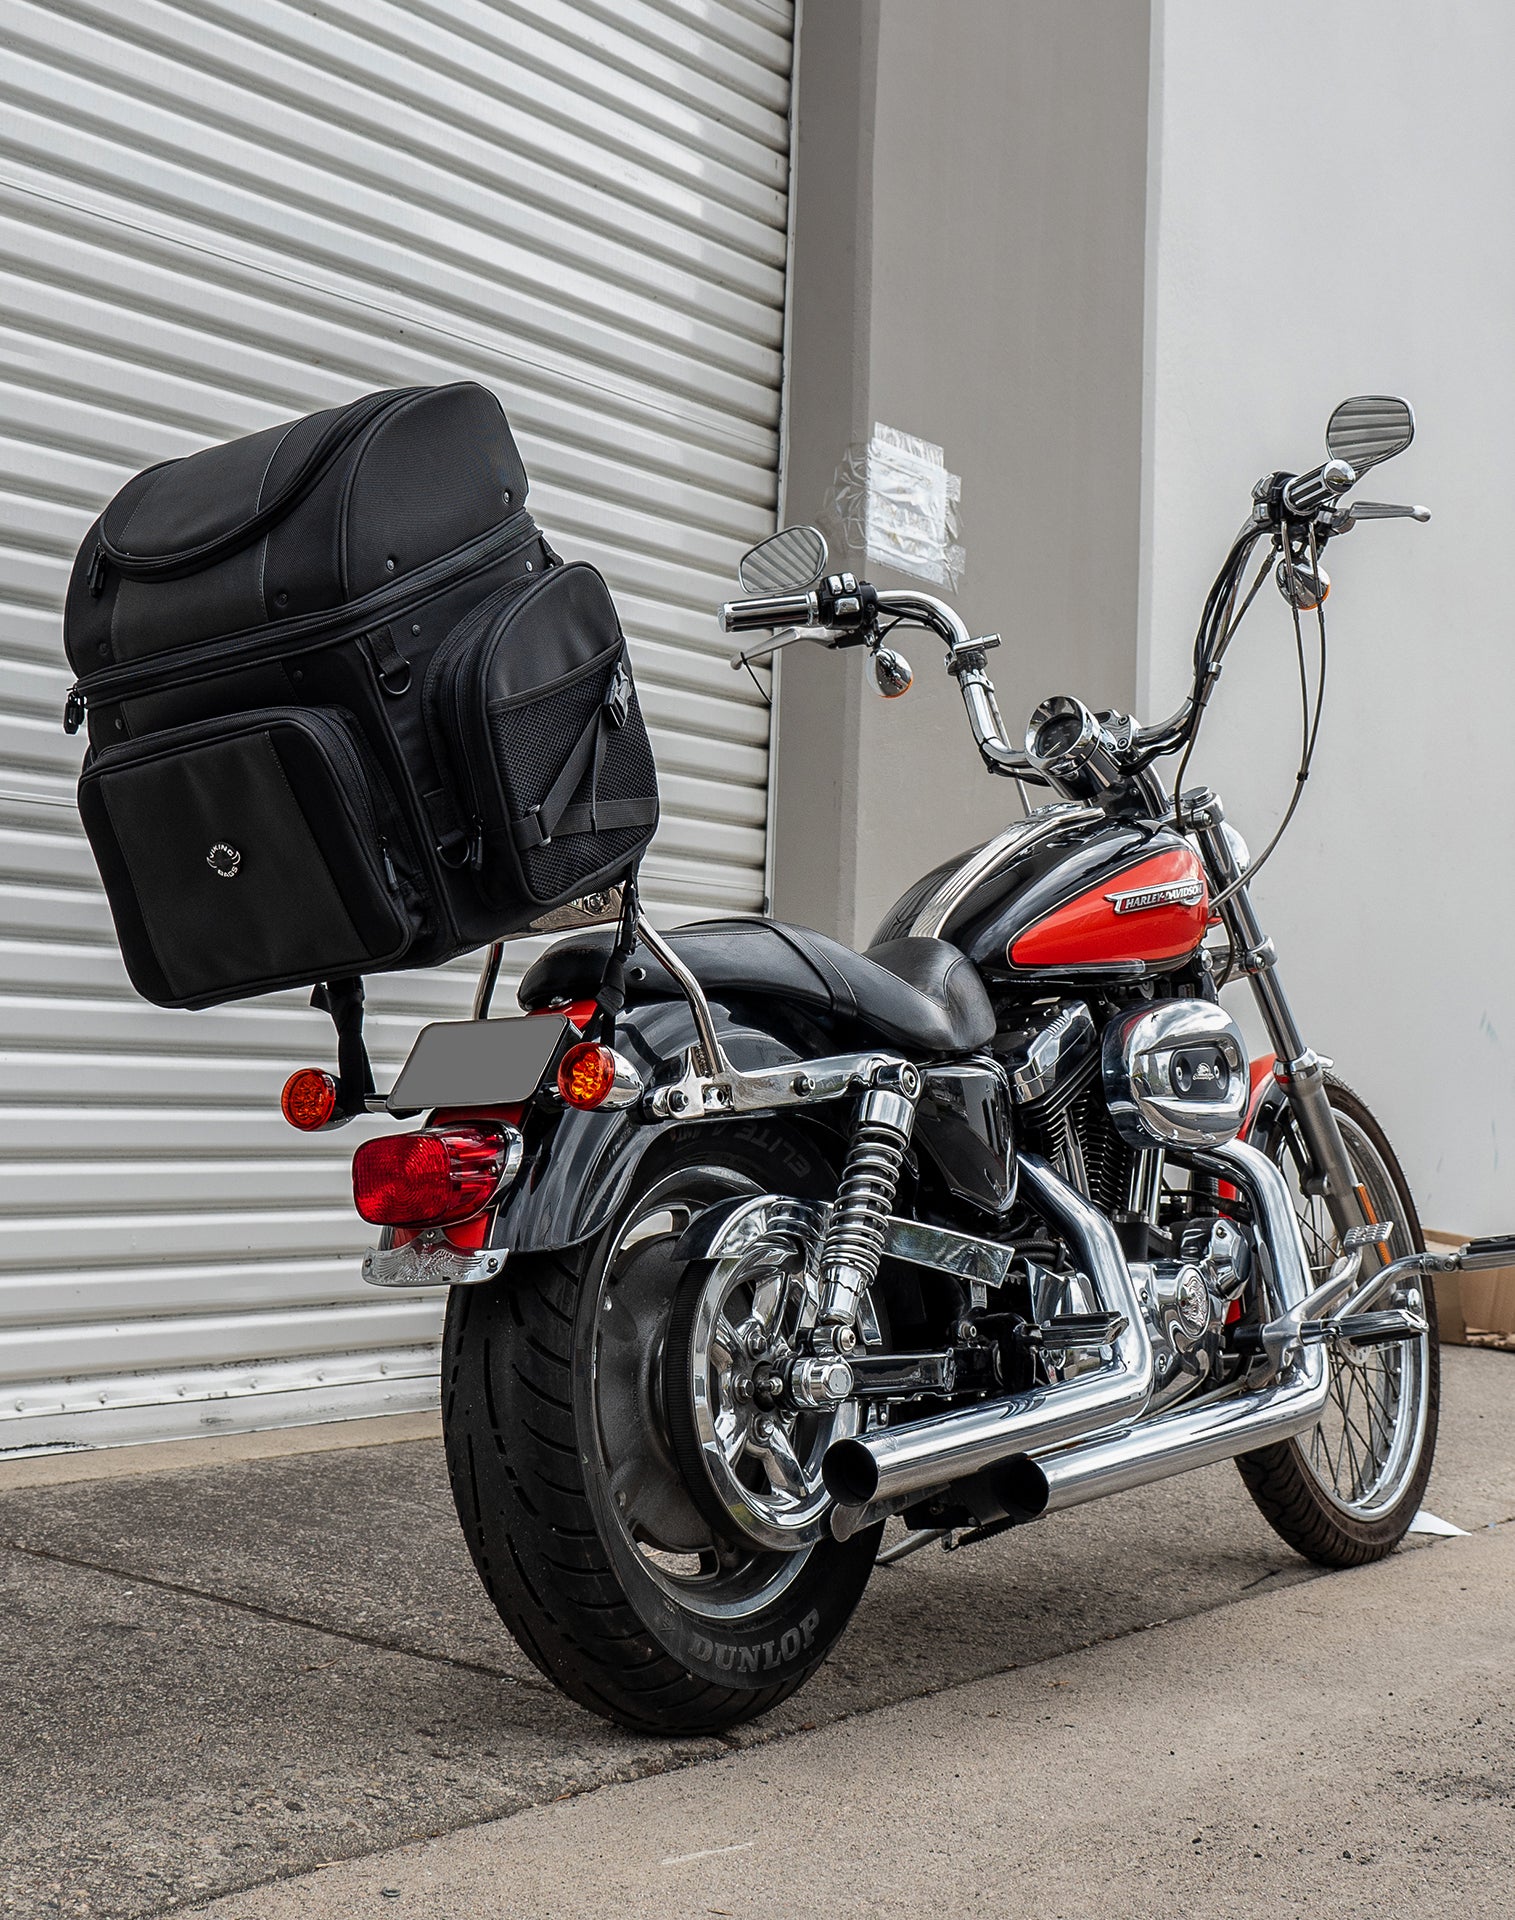 52L - Galleon XL Suzuki Motorcycle Tail Bag